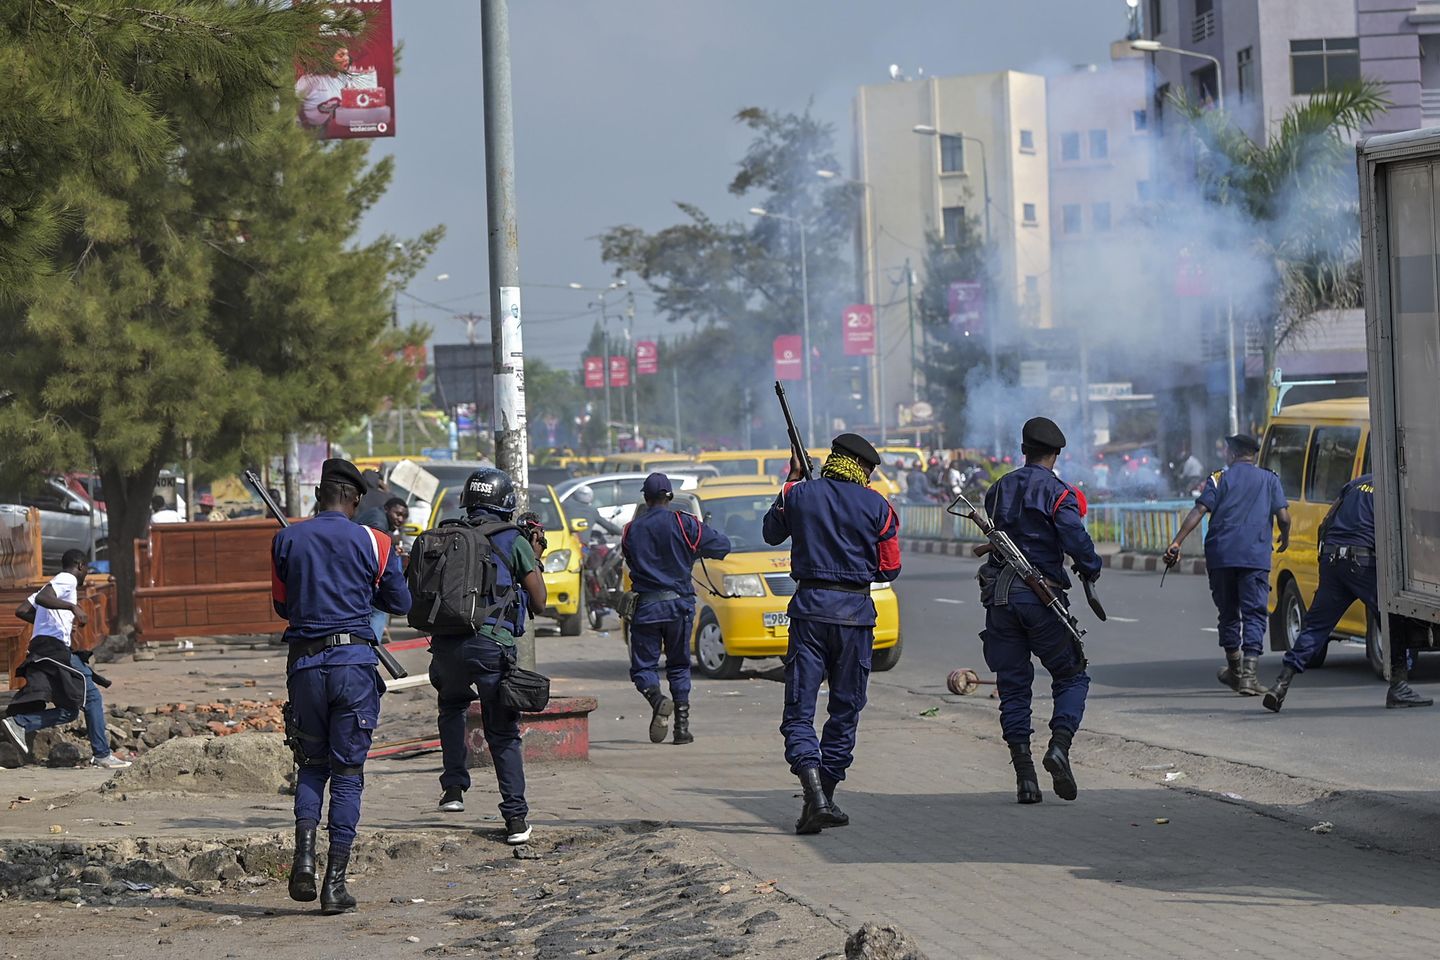 Yabancı birliklere karşı çıkan Kongo protestocularına göz yaşartıcı gaz atıldı